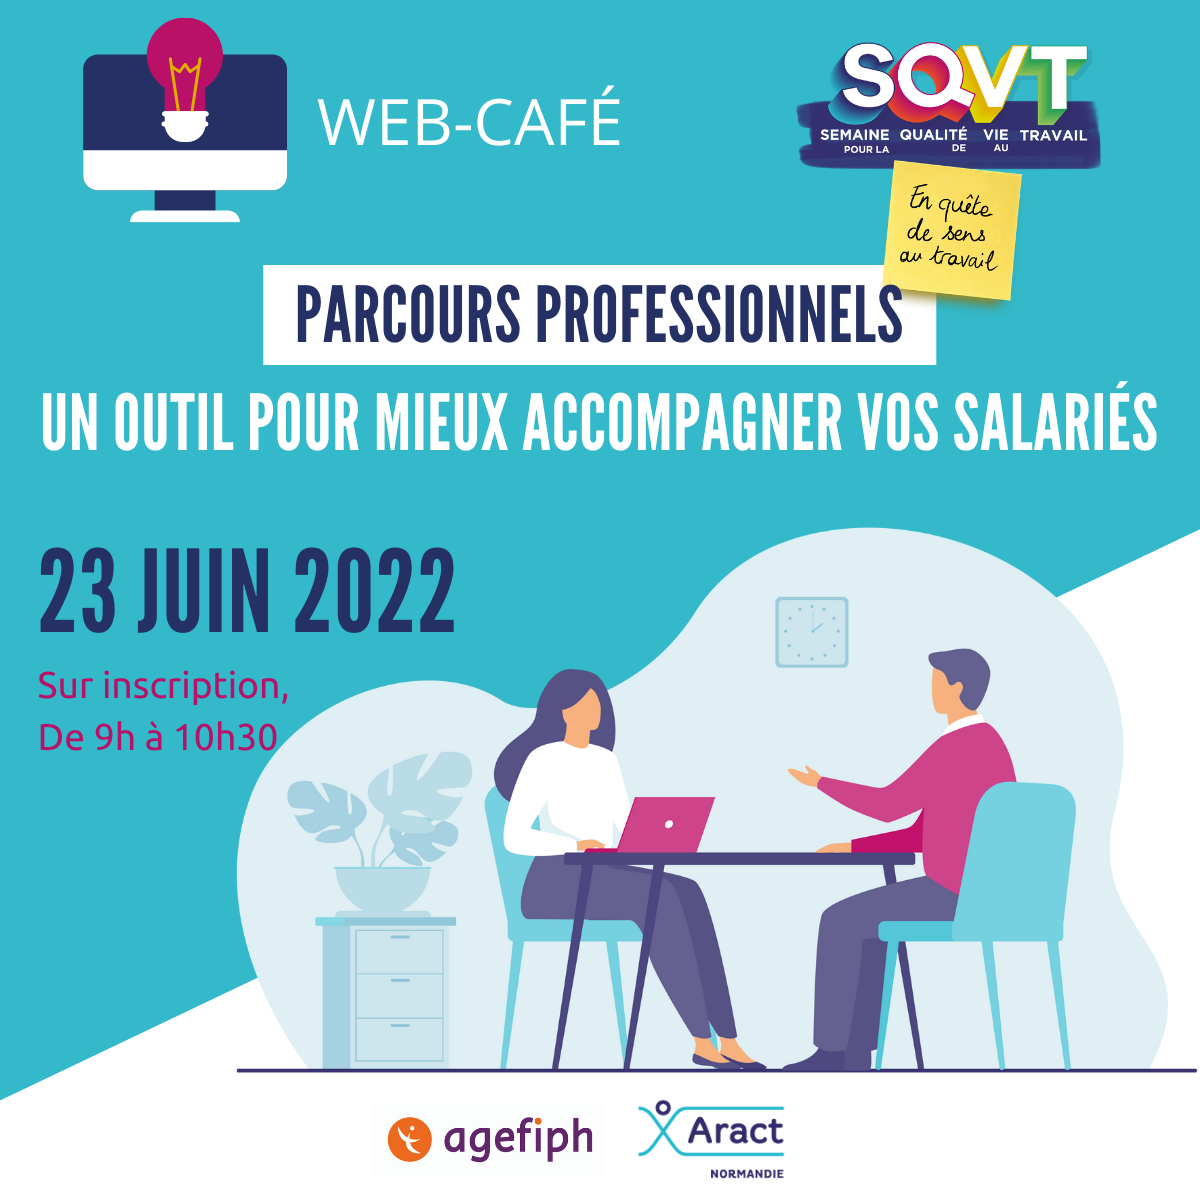 Web cafe parcours professionnels SQVT 2022